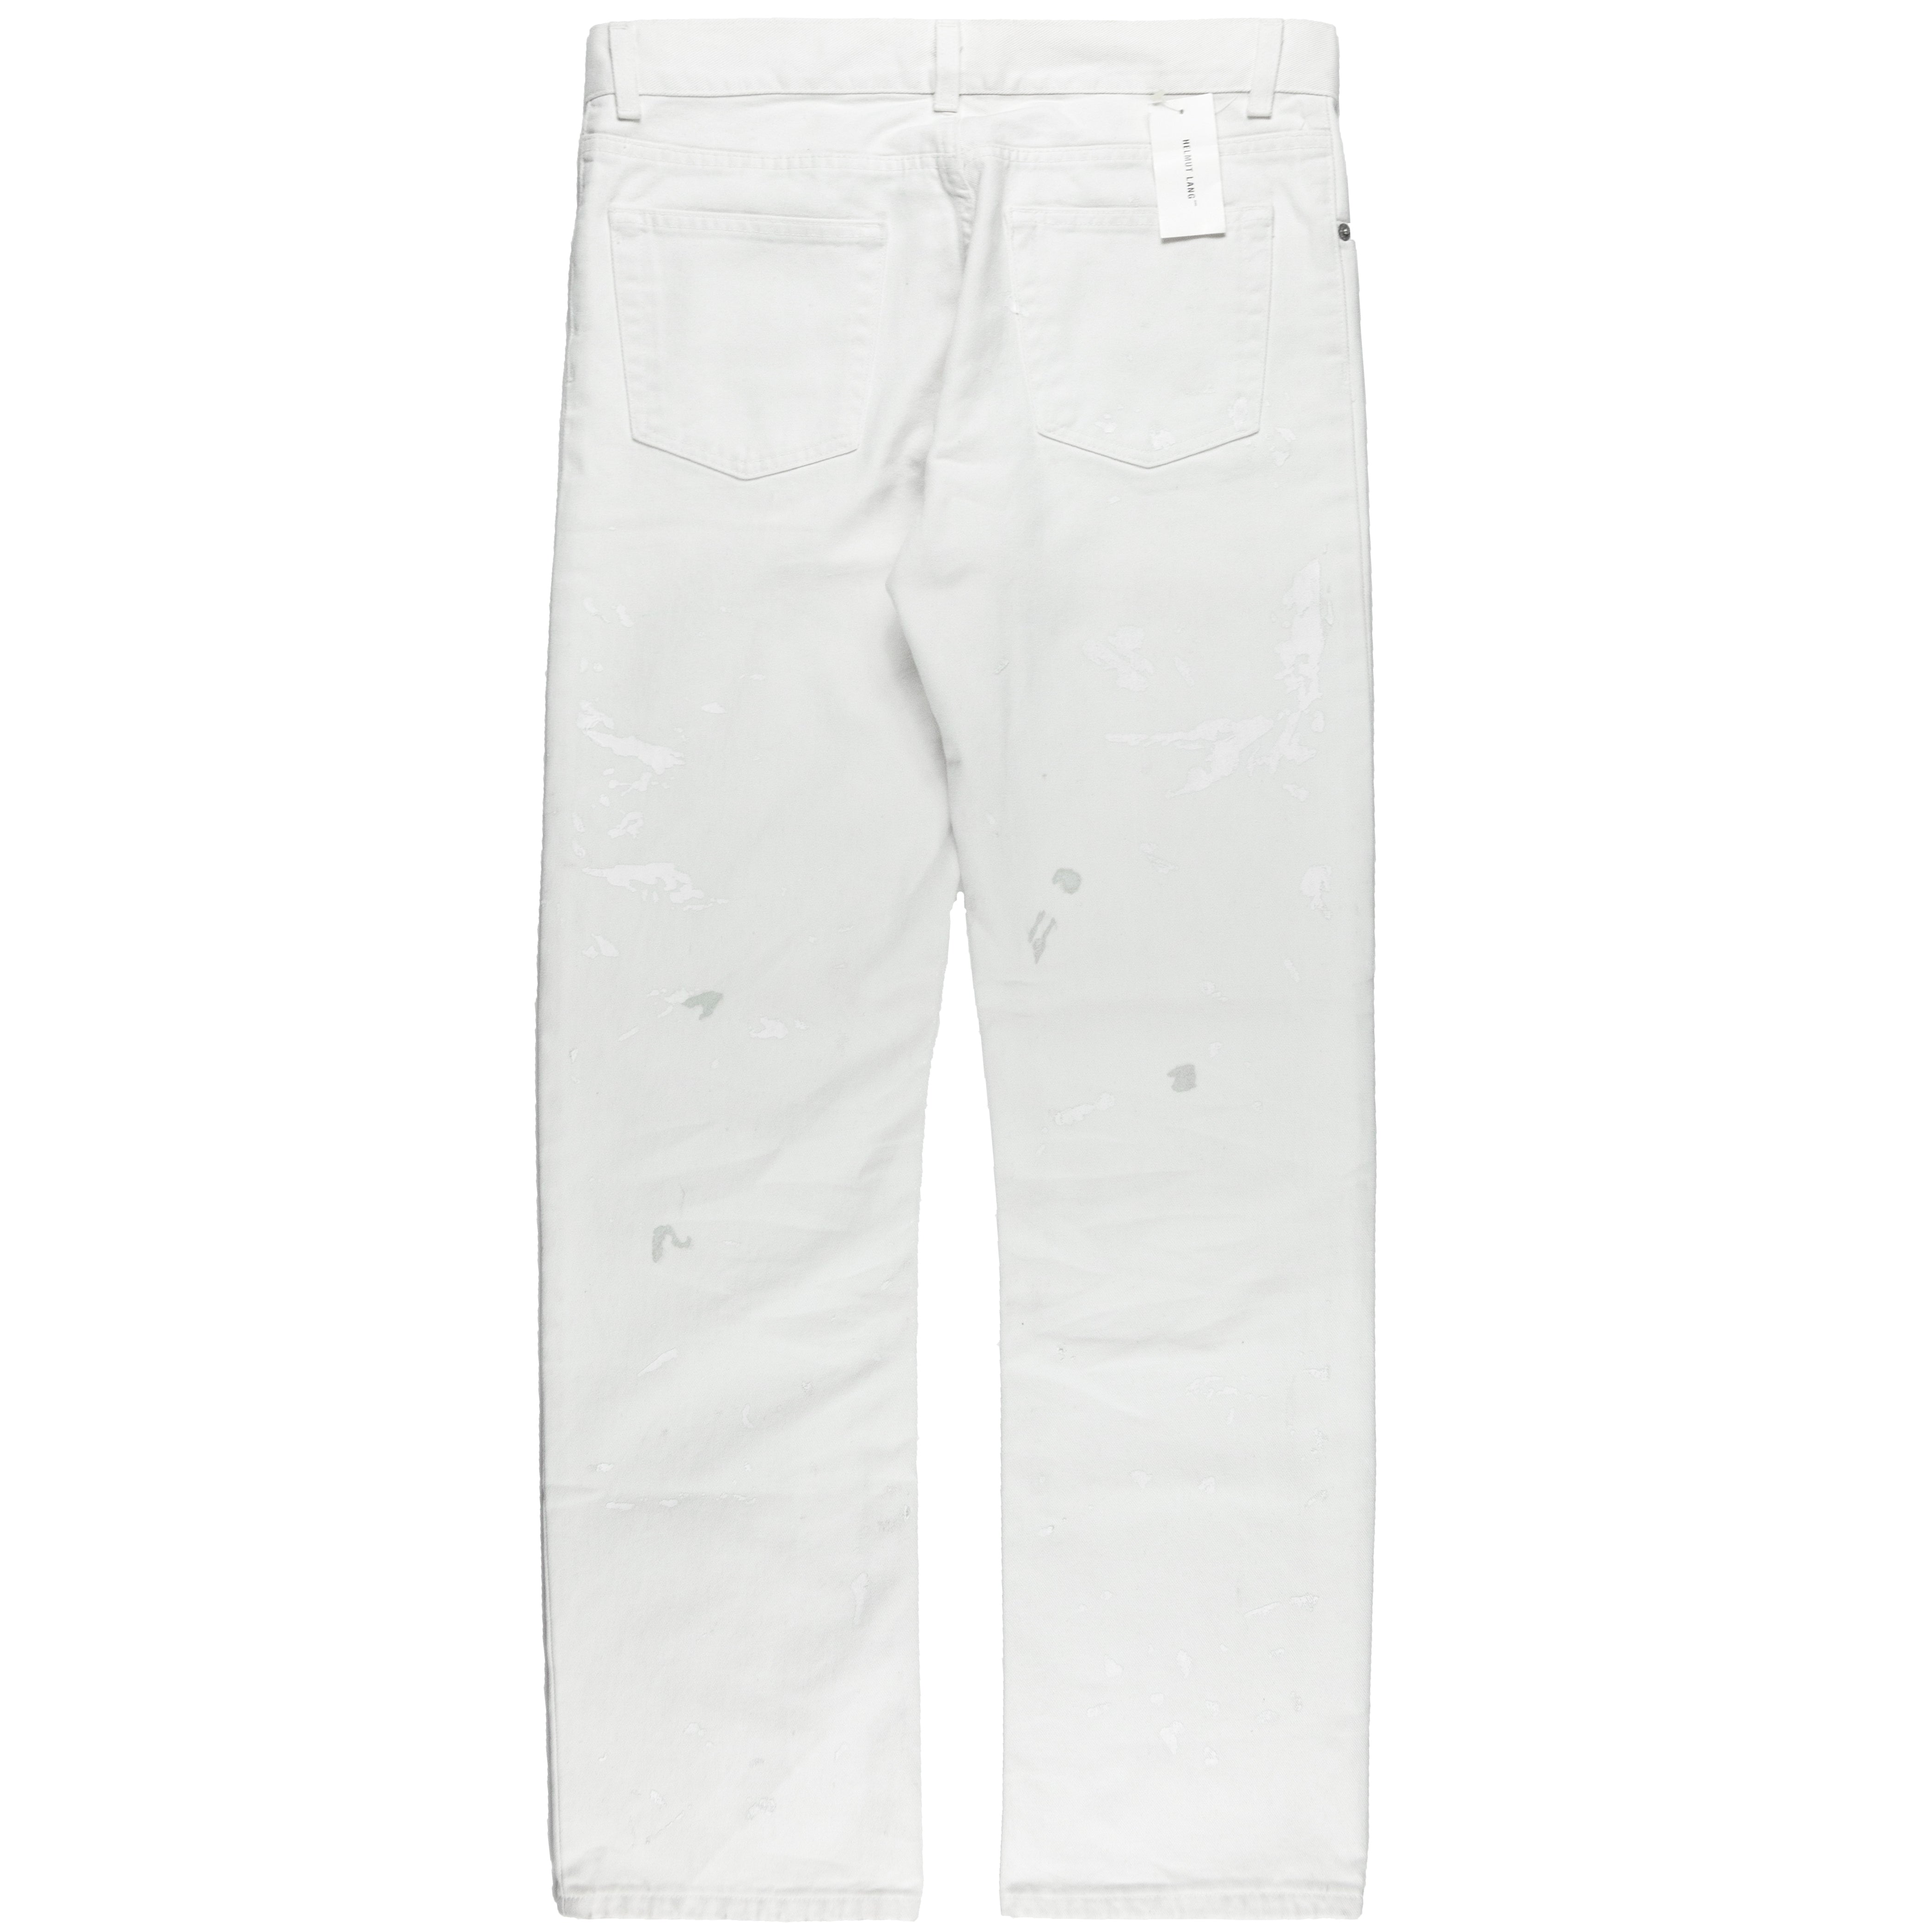 Helmut Lang White Painter Jeans - 1999 - SILVER LEAGUE